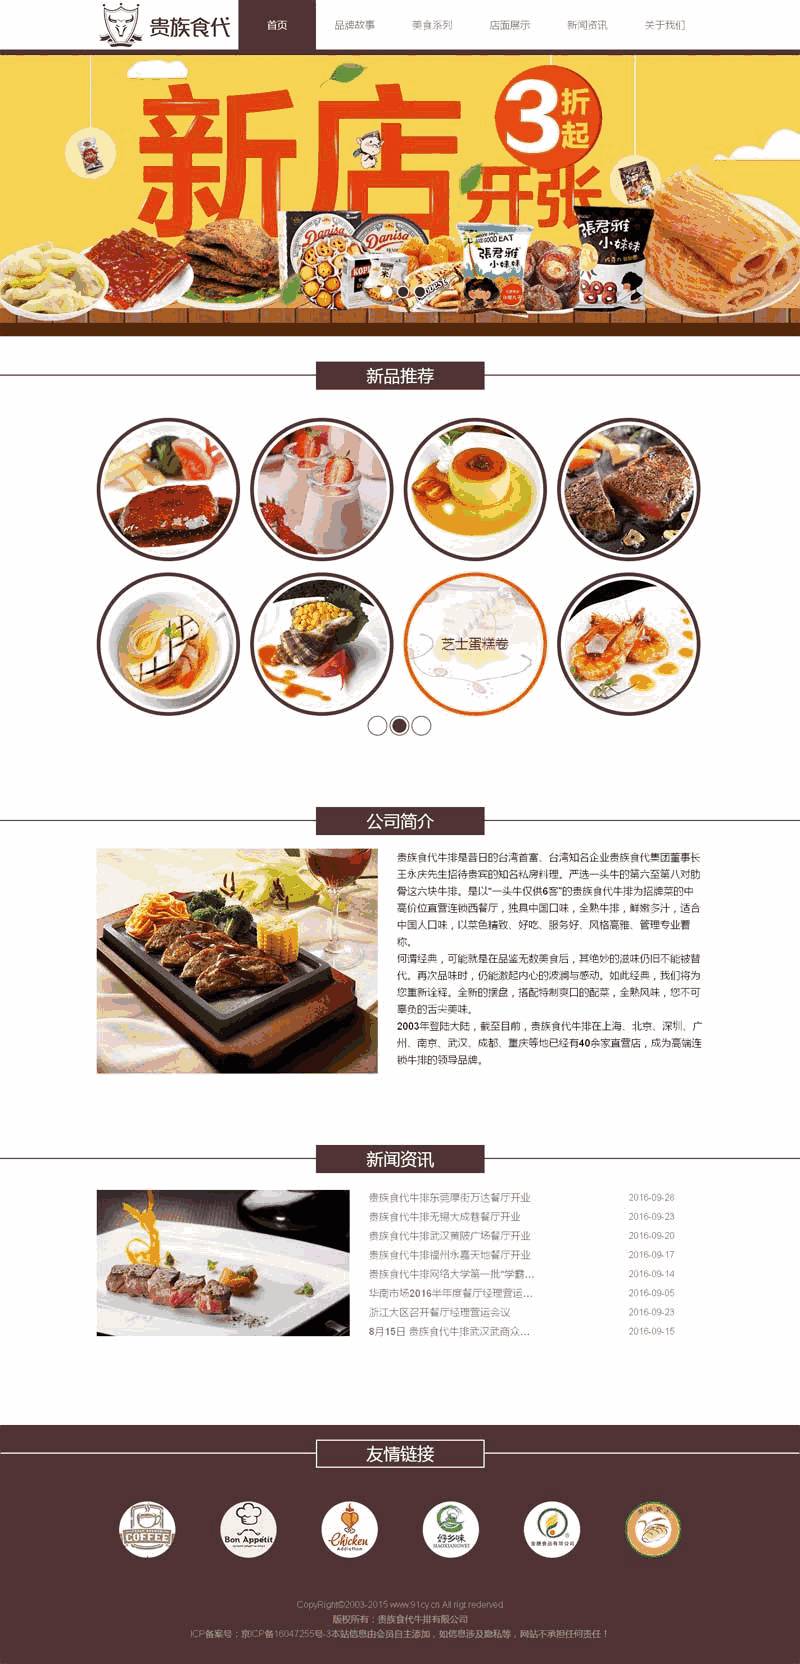 简单牛排美食餐厅网站主题模板下载演示图